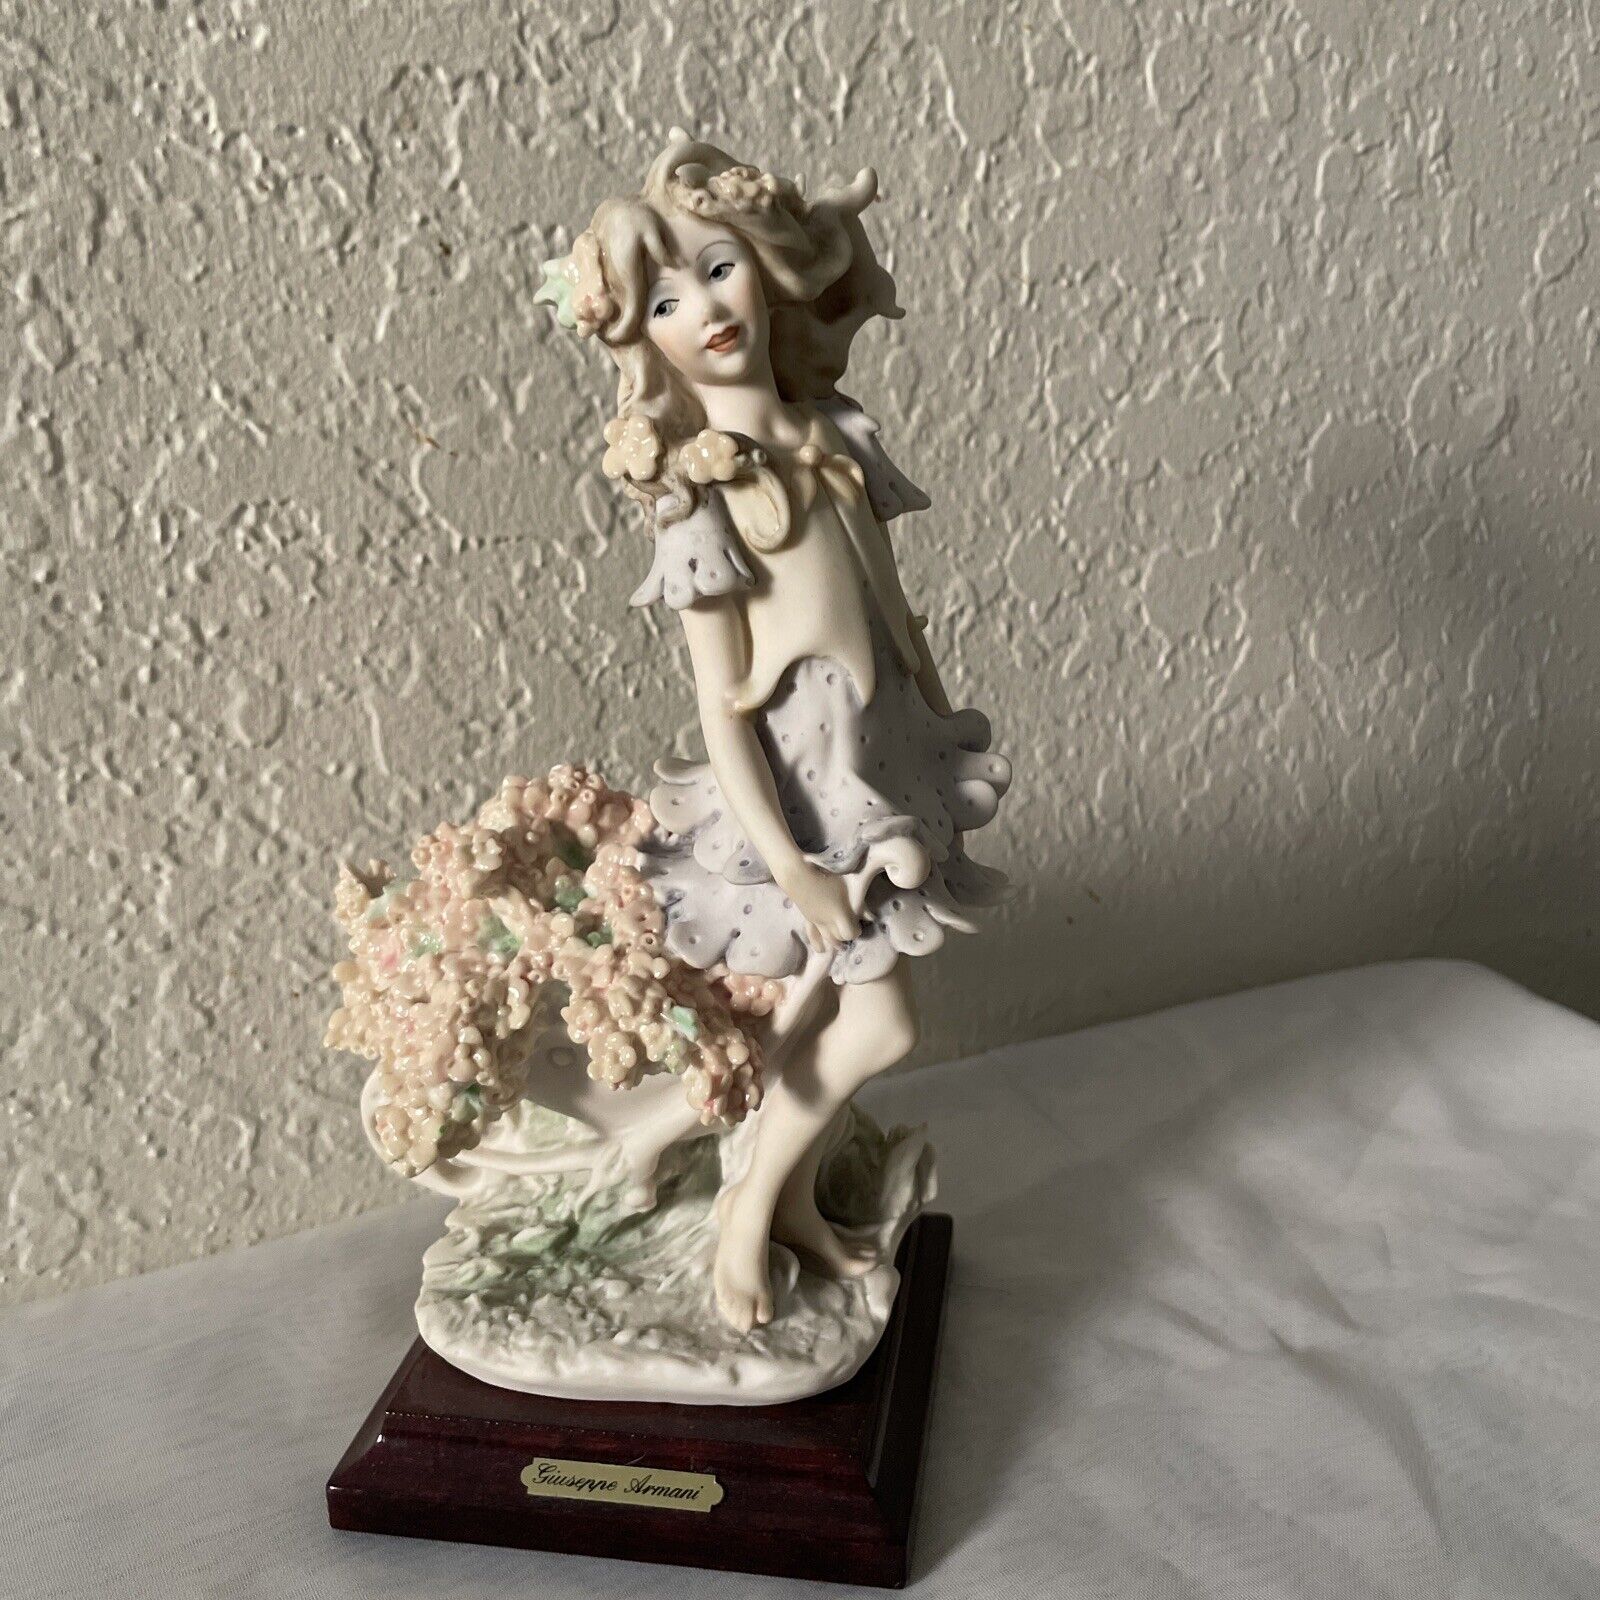 VTG Giuseppe Armani Flower Girl Figurine